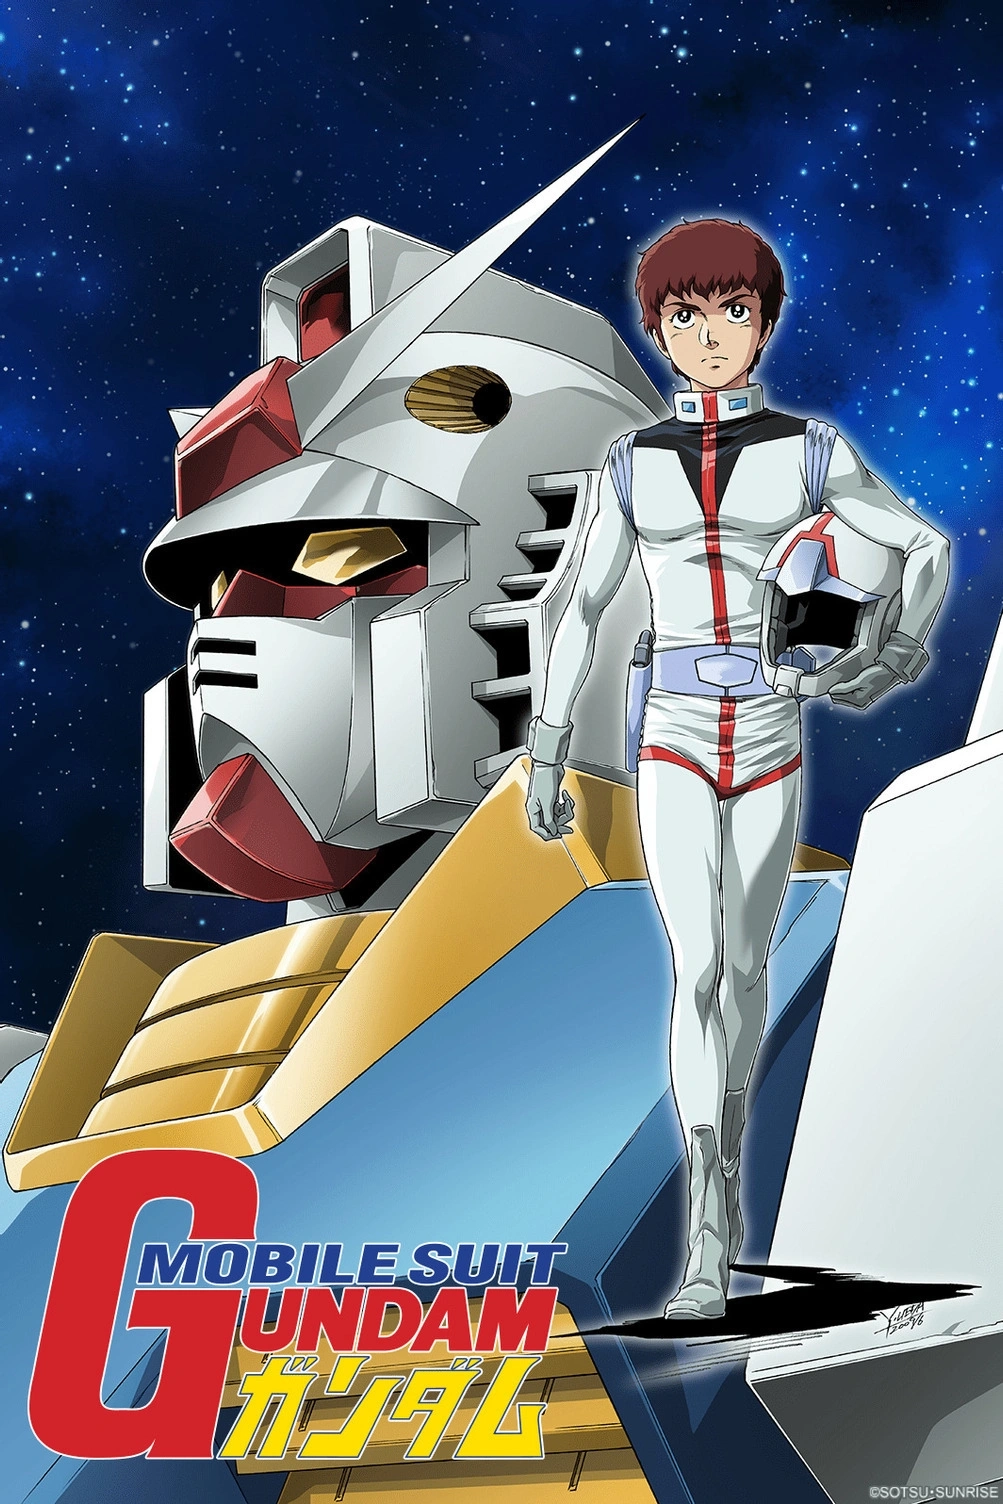 Cómo ver la saga Mobile Suit Gundam en orden cronológico